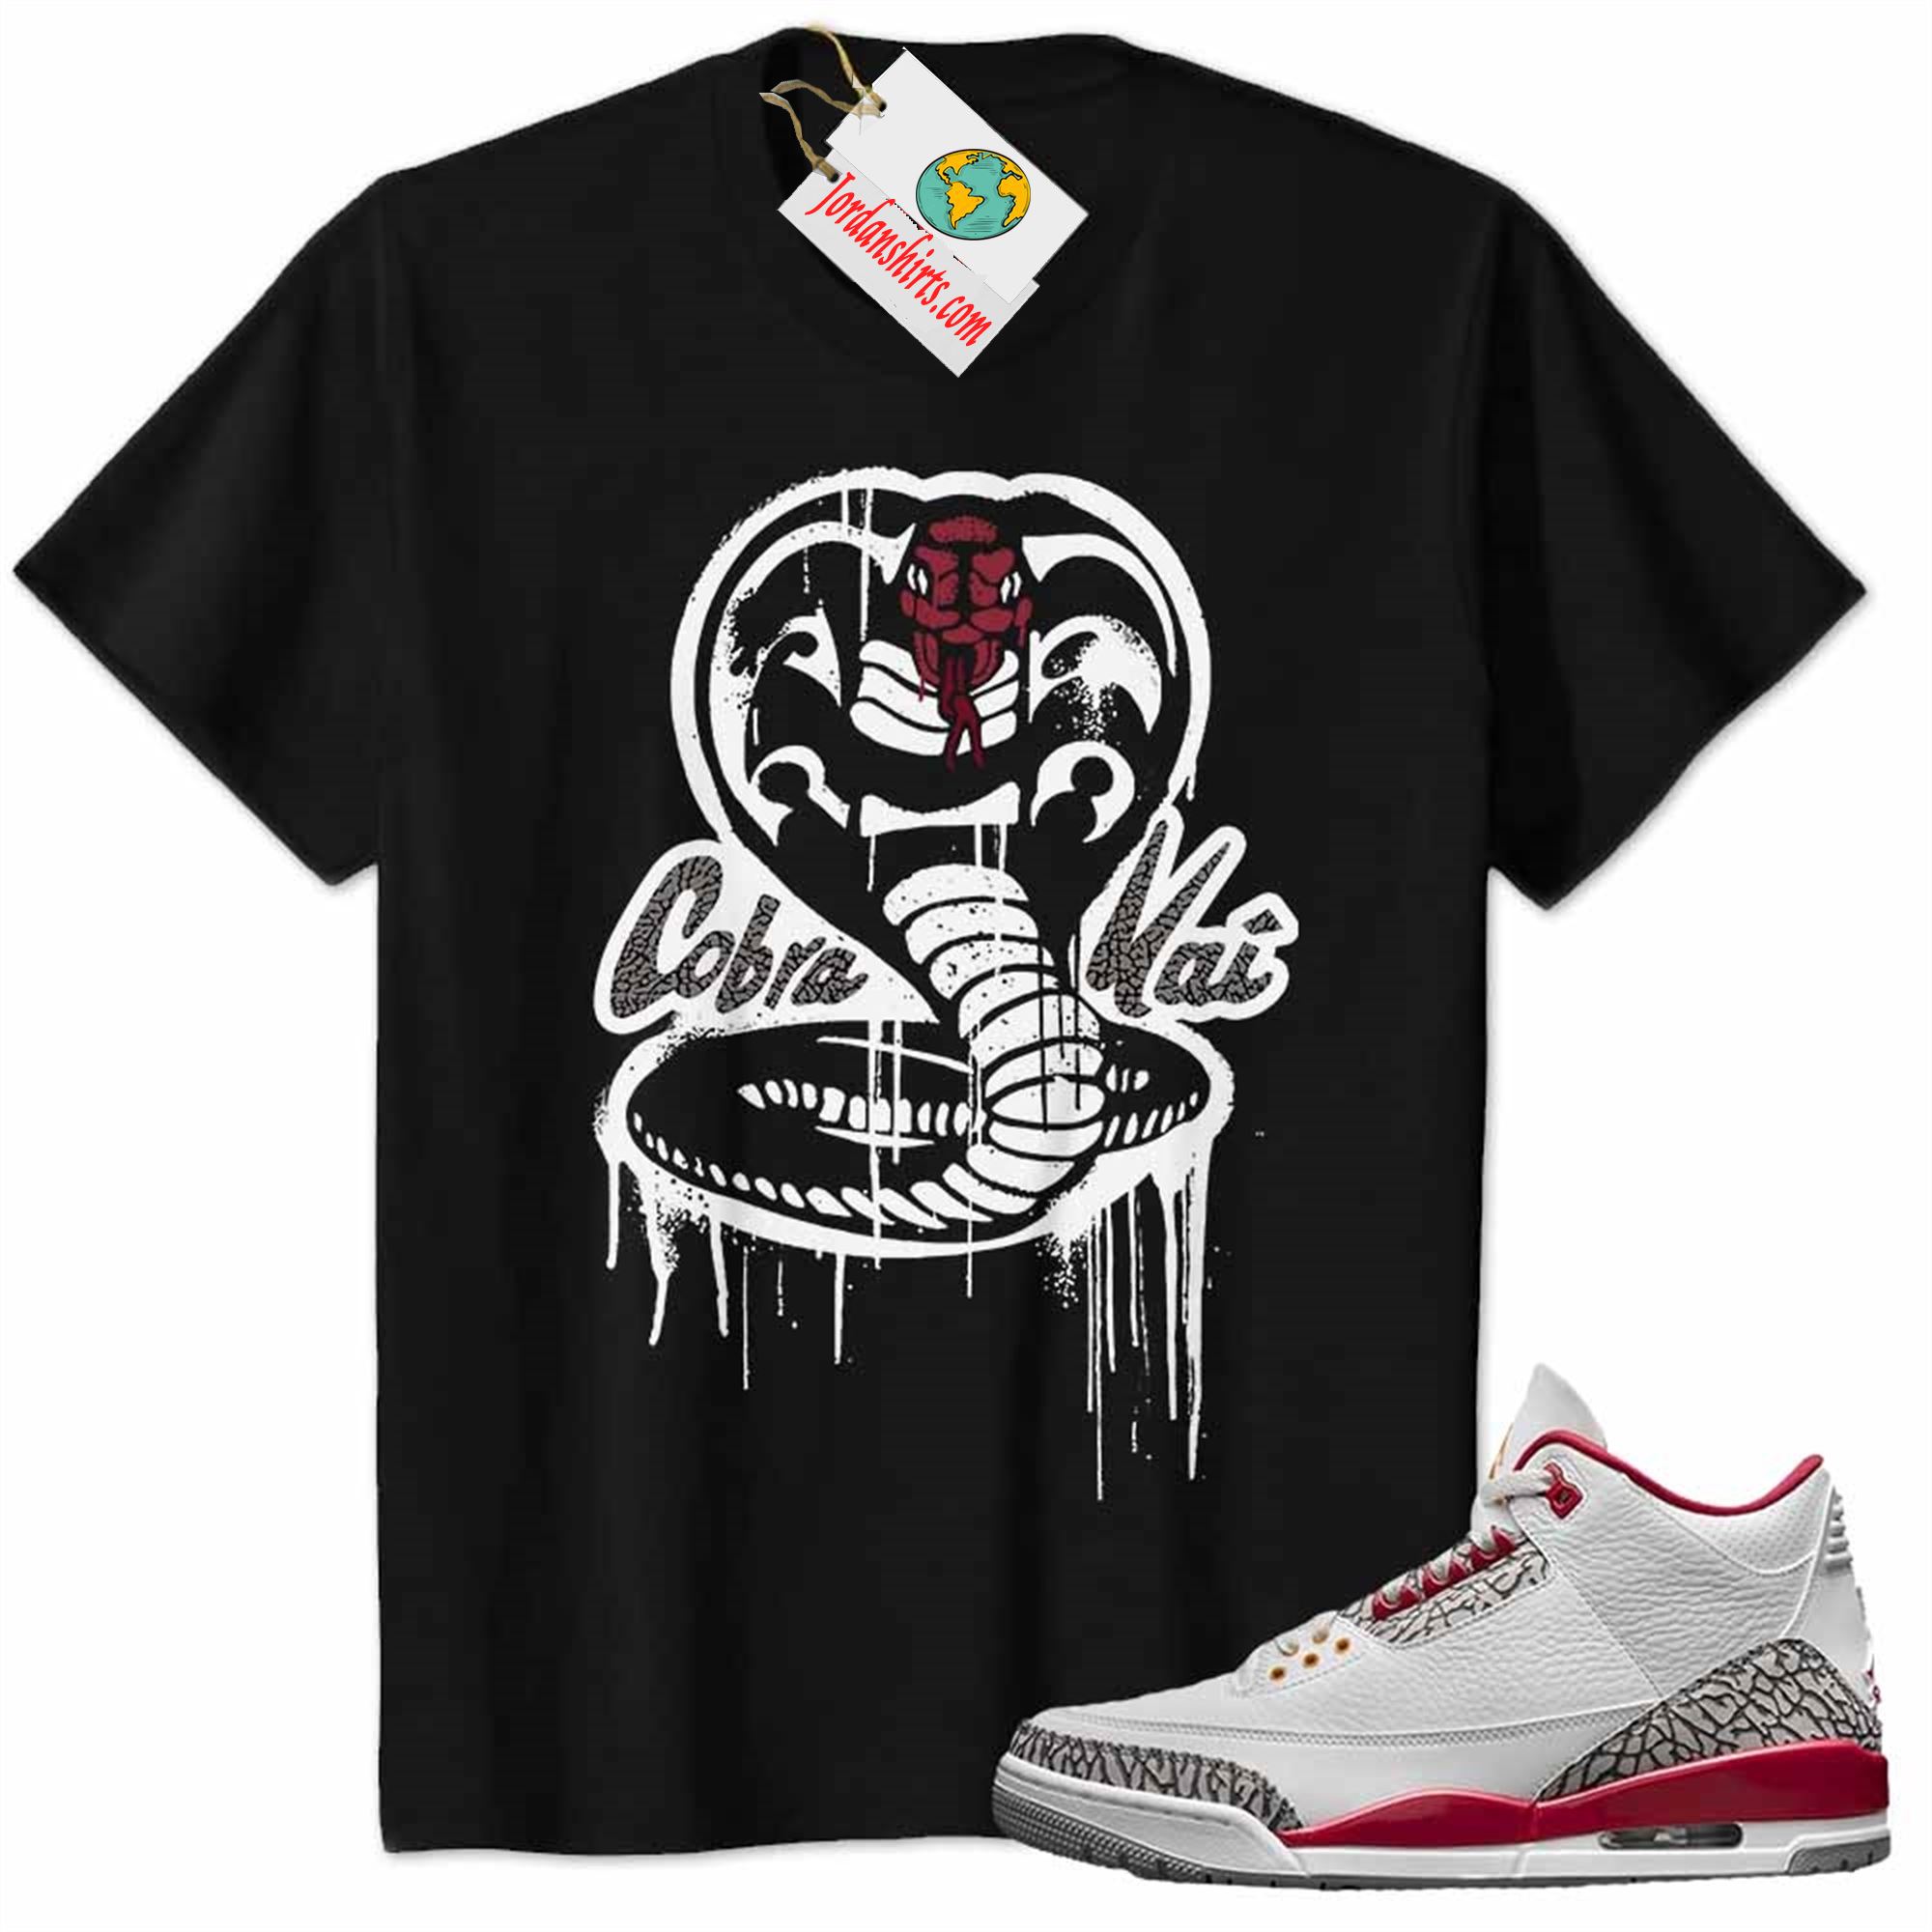 Jordan 3 Shirt, Cobra Kai No Mercy Melt Black Air Jordan 3 Cardinal Red 3s Size Up To 5xl